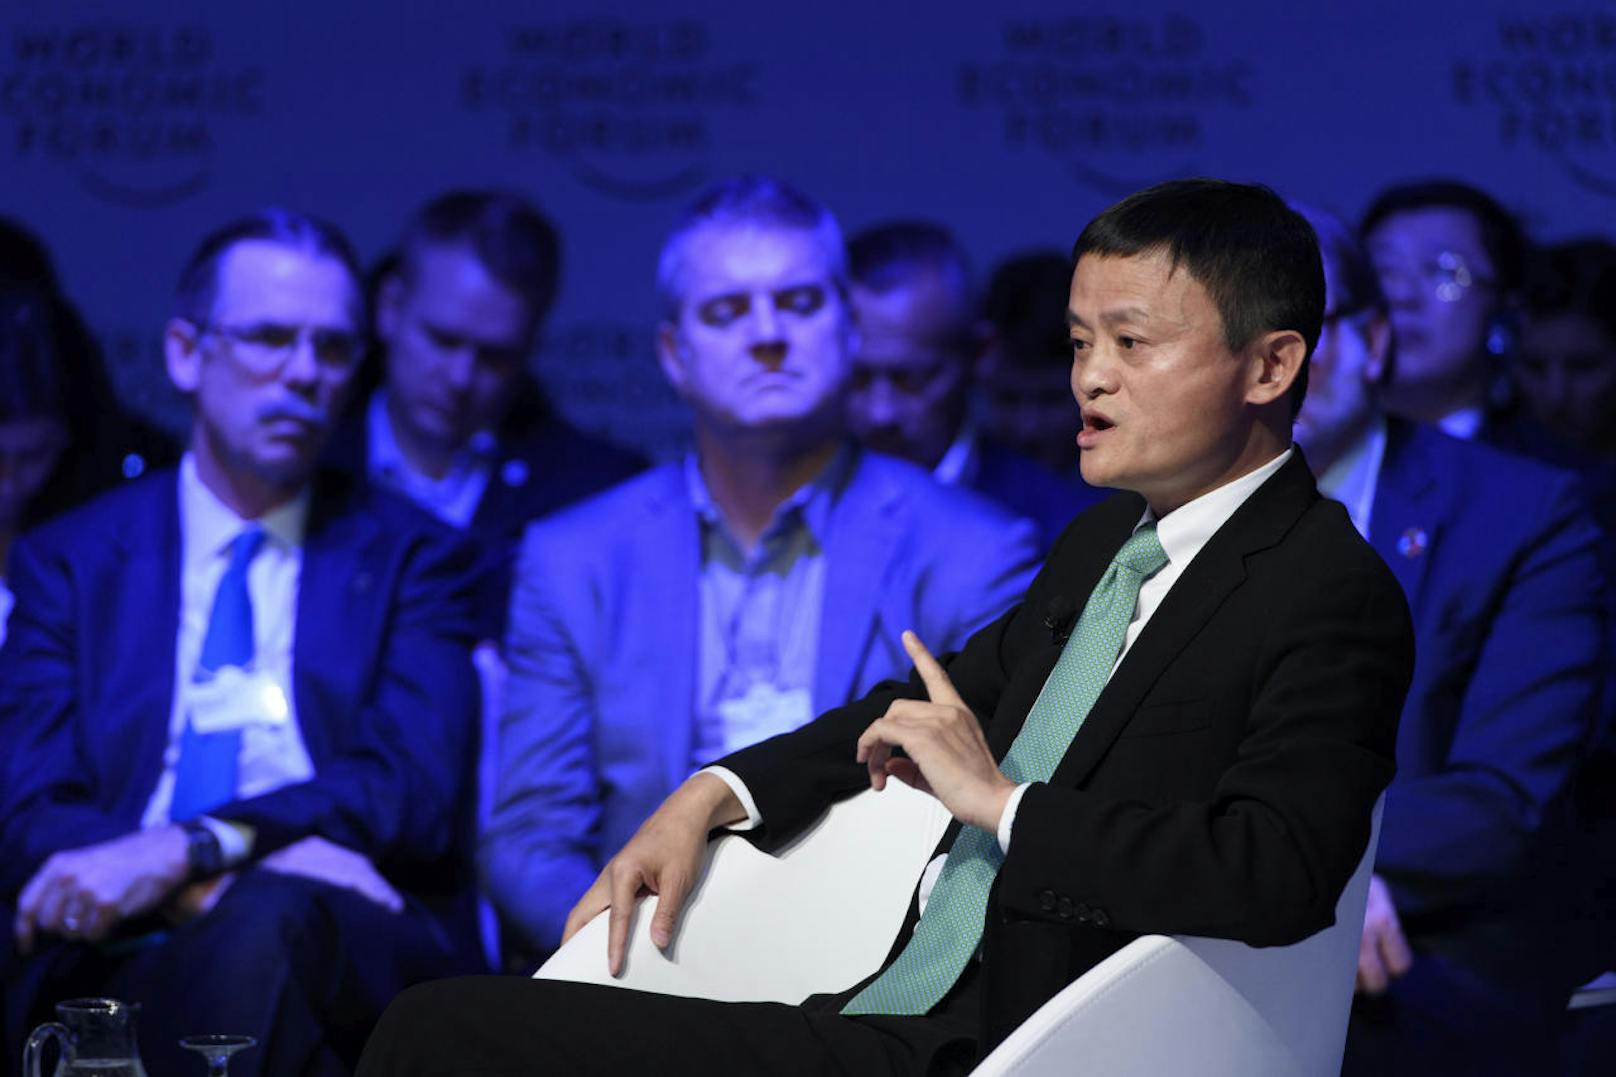 <b>36,6 Milliarden Dollar (Platz 15):</b> Jack Ma (52) gründete Alibaba, Chinas größten Online-Händler. Die Gruppe verfügt über 400 Millionen aktive Käufer in über 190 Ländern.